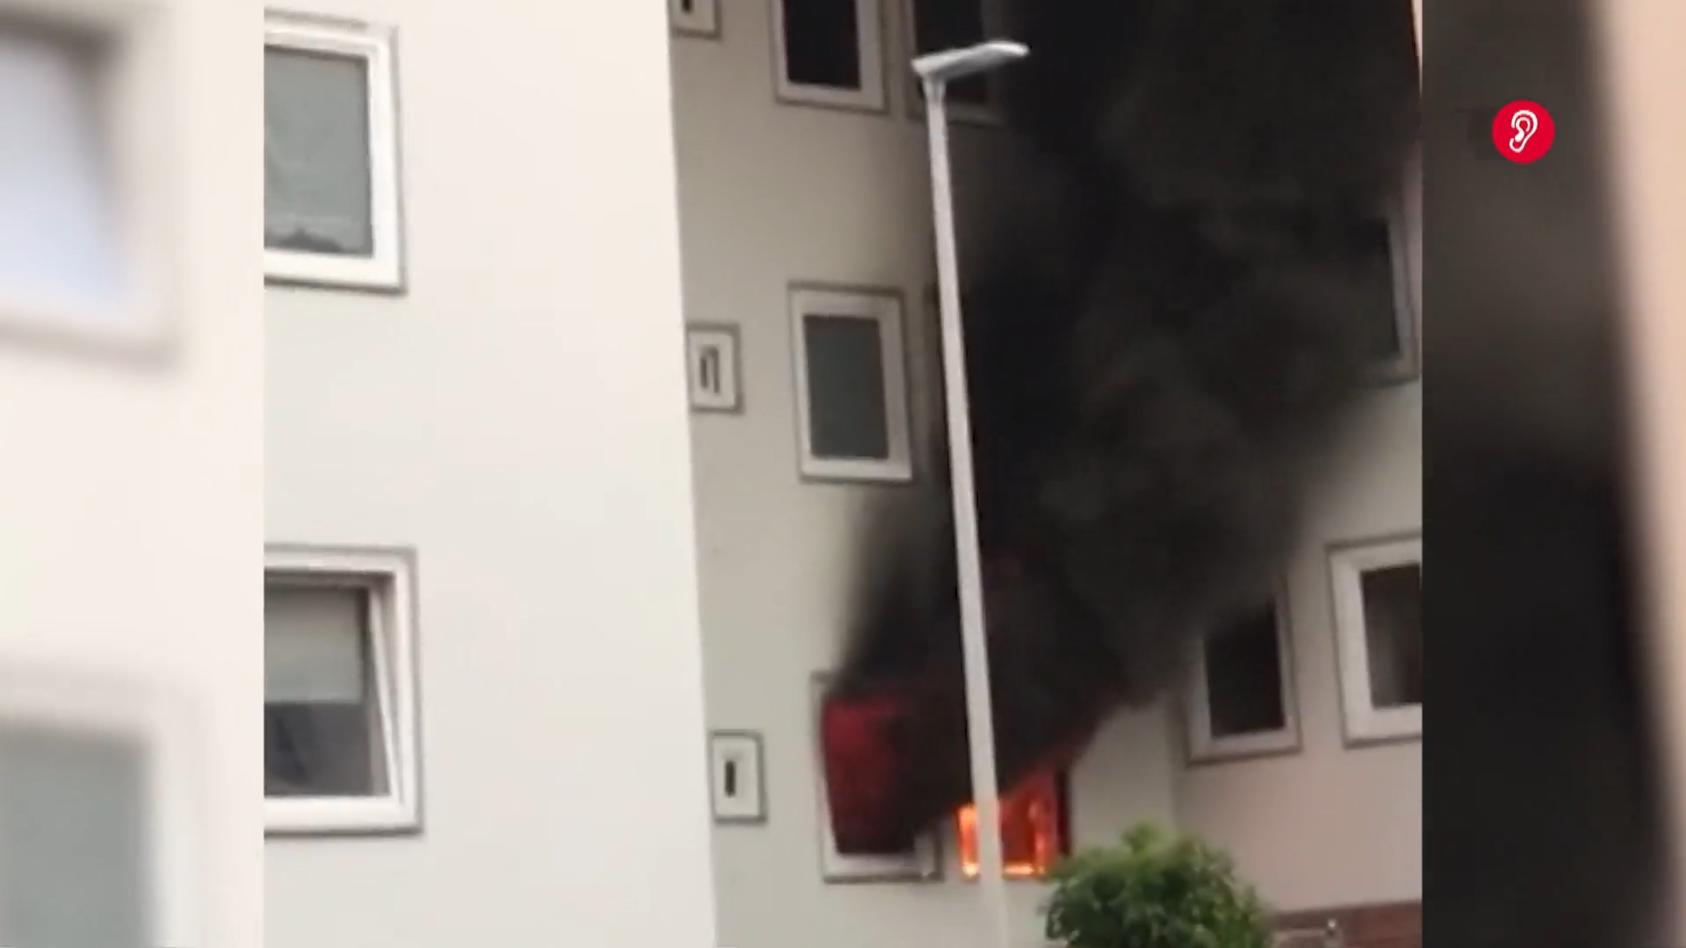 Hausexplosion in Hannover Anwohner rechneten "mit dem schlimmsten"